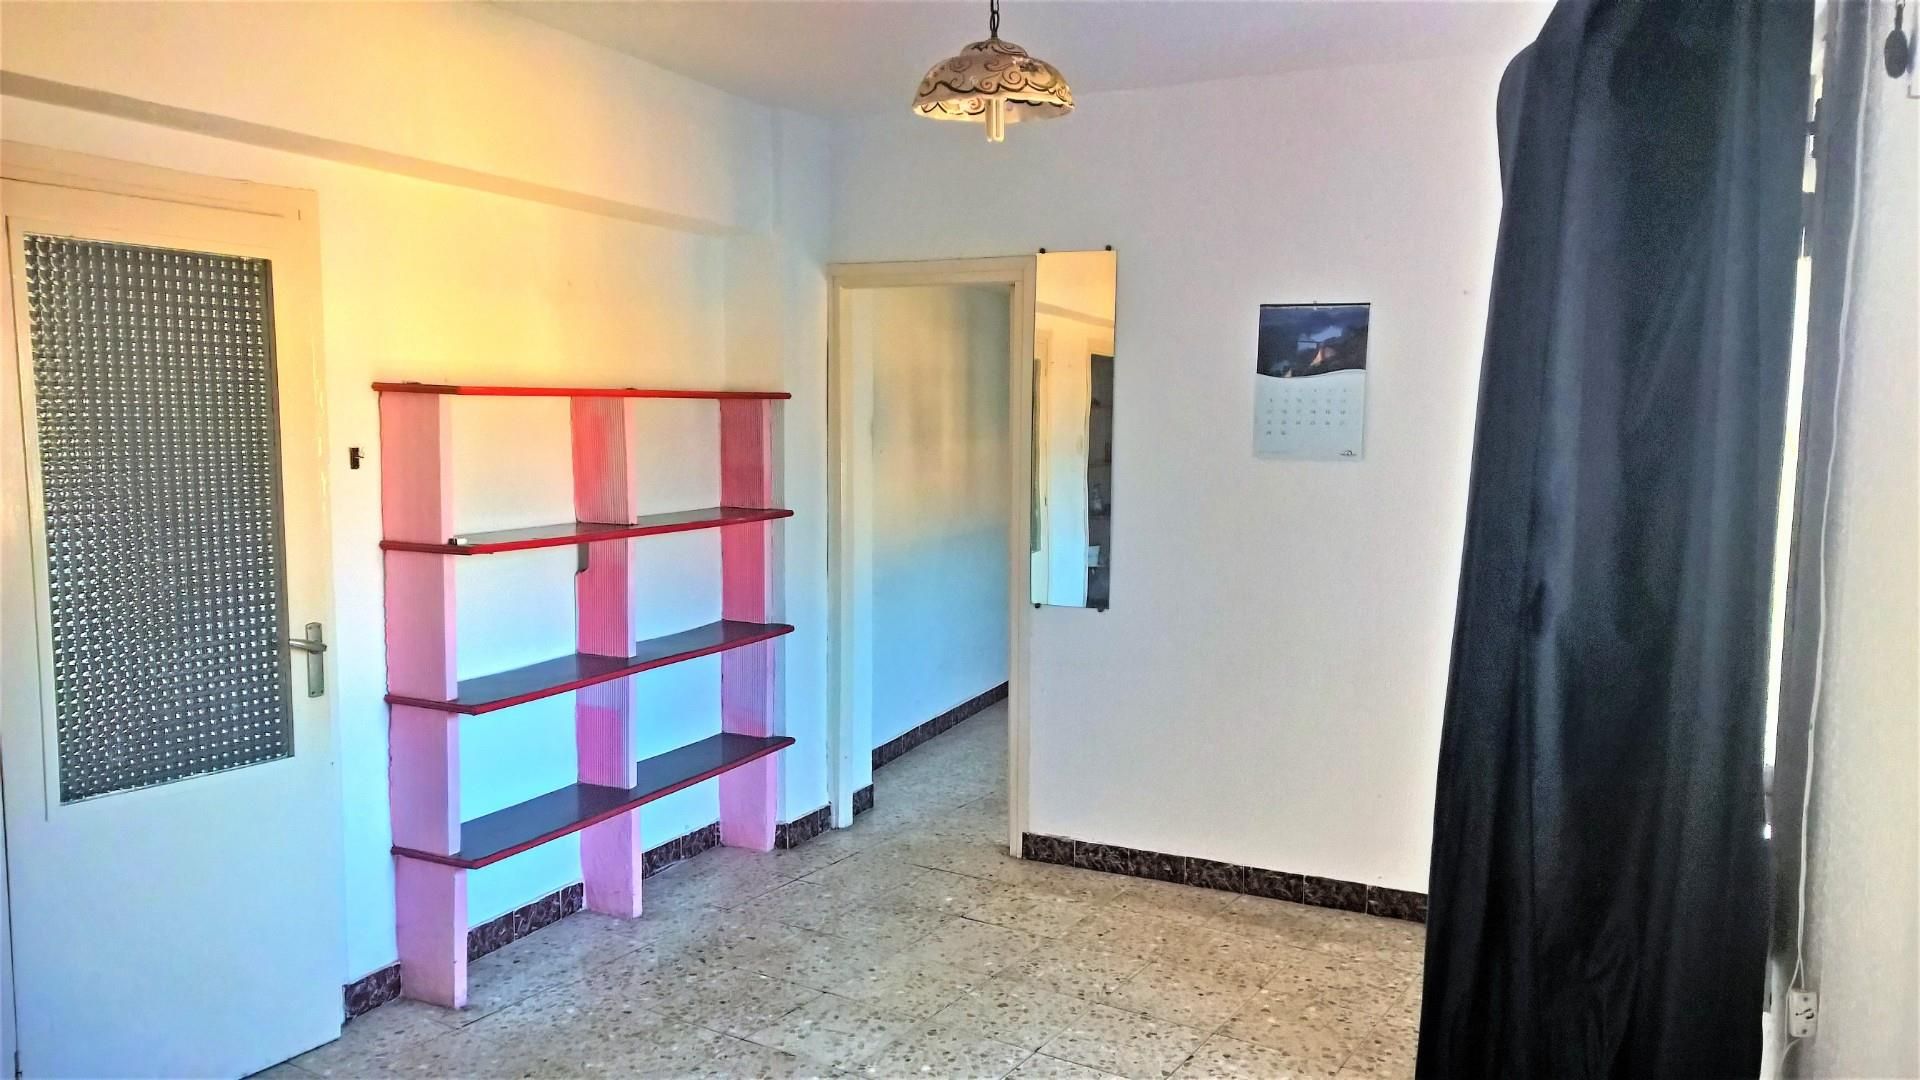 Viviendas y casas baratas en venta en Centro, Mérida: Desde € -  Chollos y Gangas | fotocasa